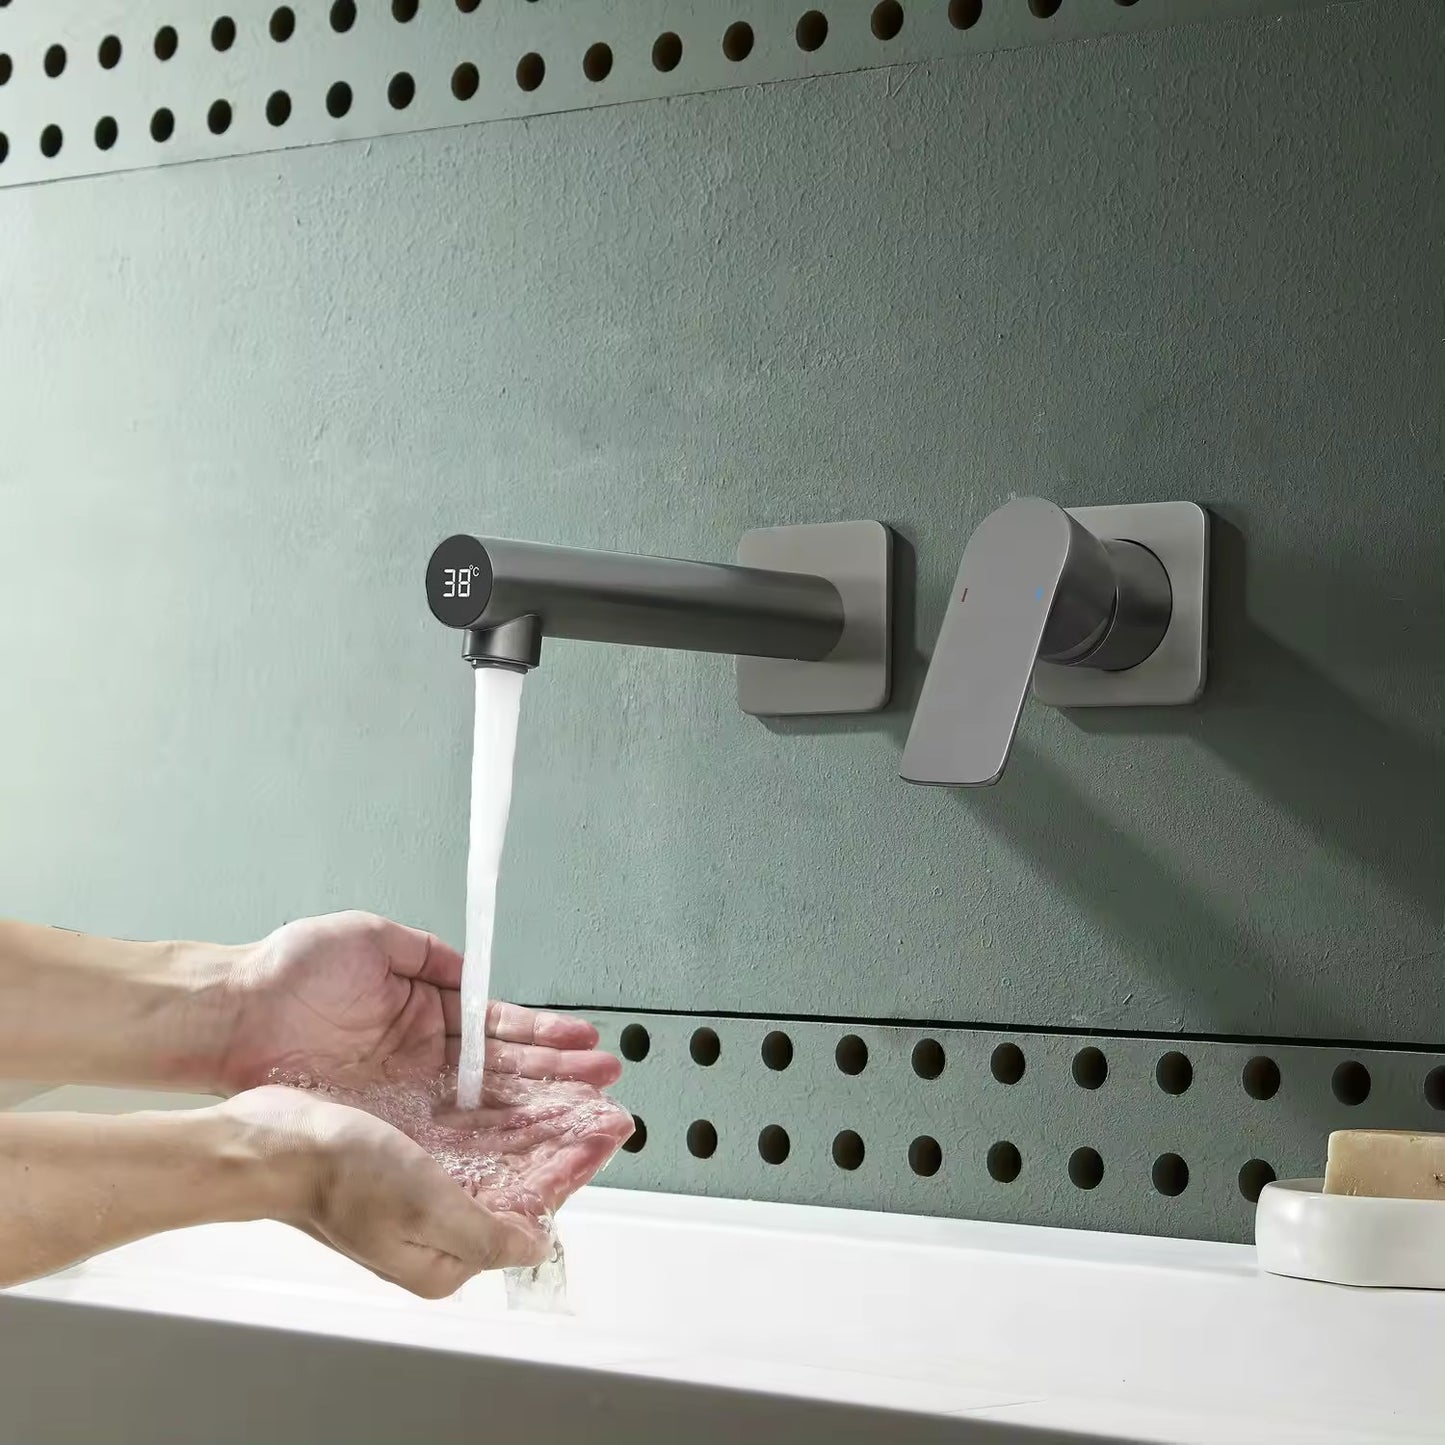 Grifo de baño Acqua para pared con pantalla de temperatura